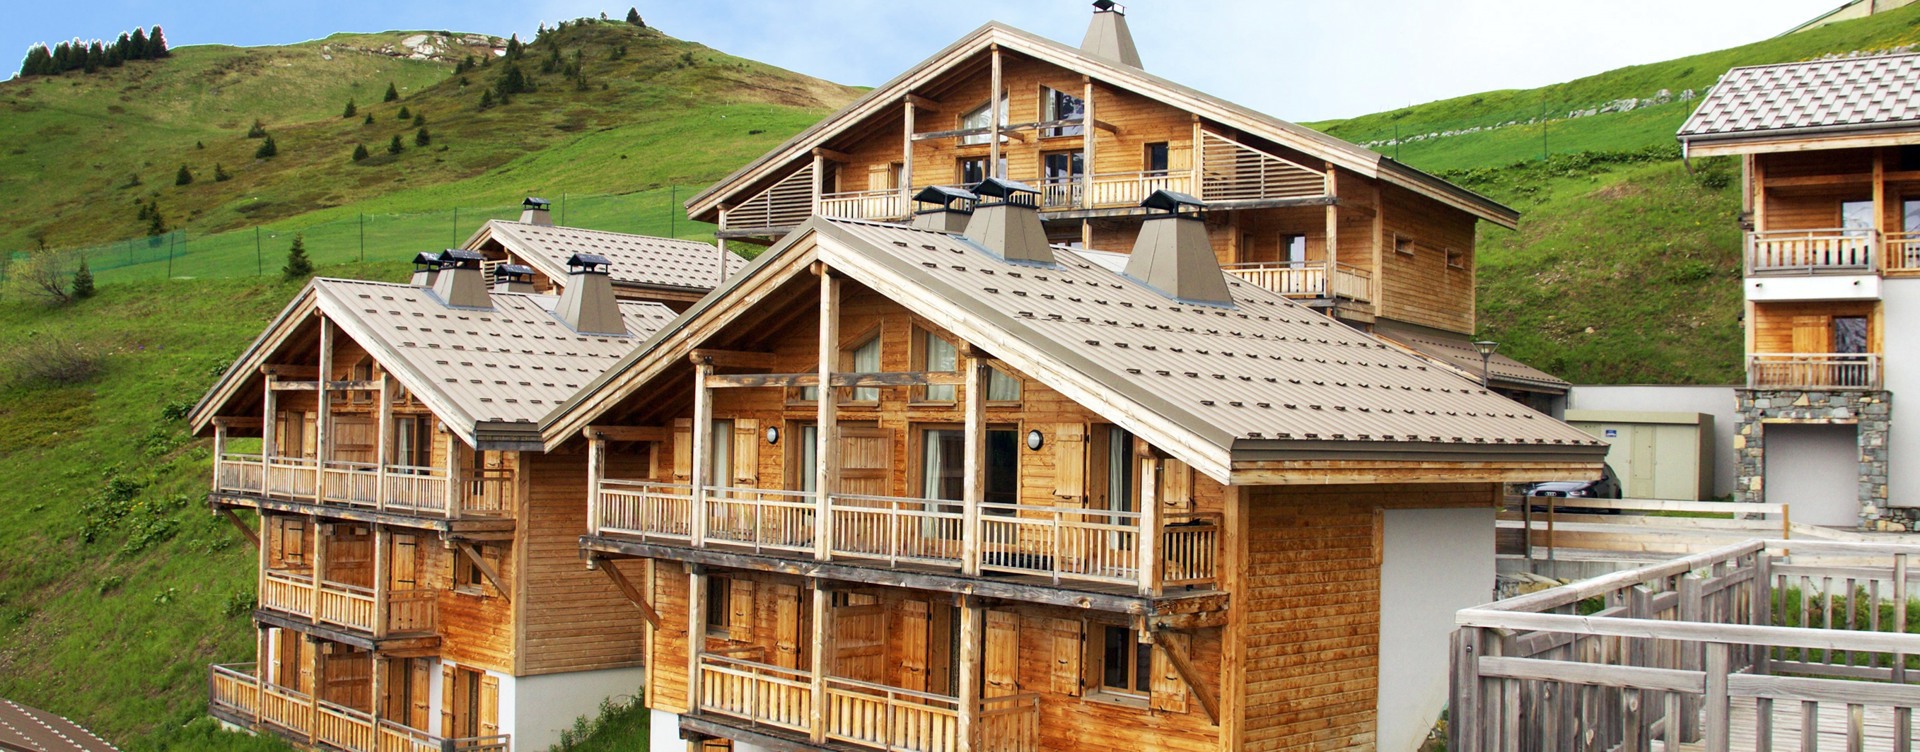 Entdecken Sie unser stimmungsvolles Resort
in Flaine in den französischen Alpen